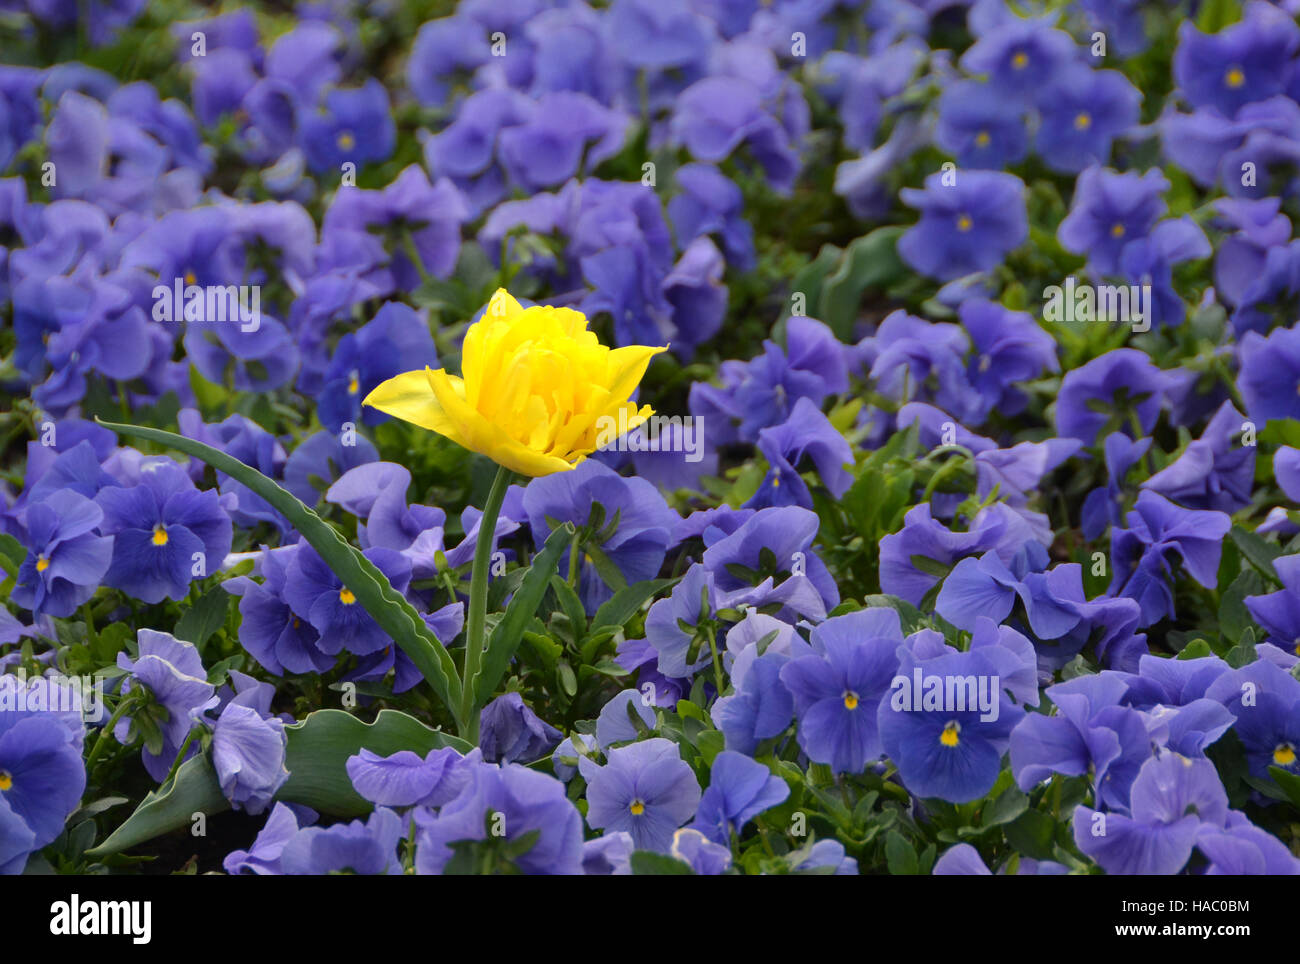 Un tulipán amarillo entre muchas flores violetas Foto de stock